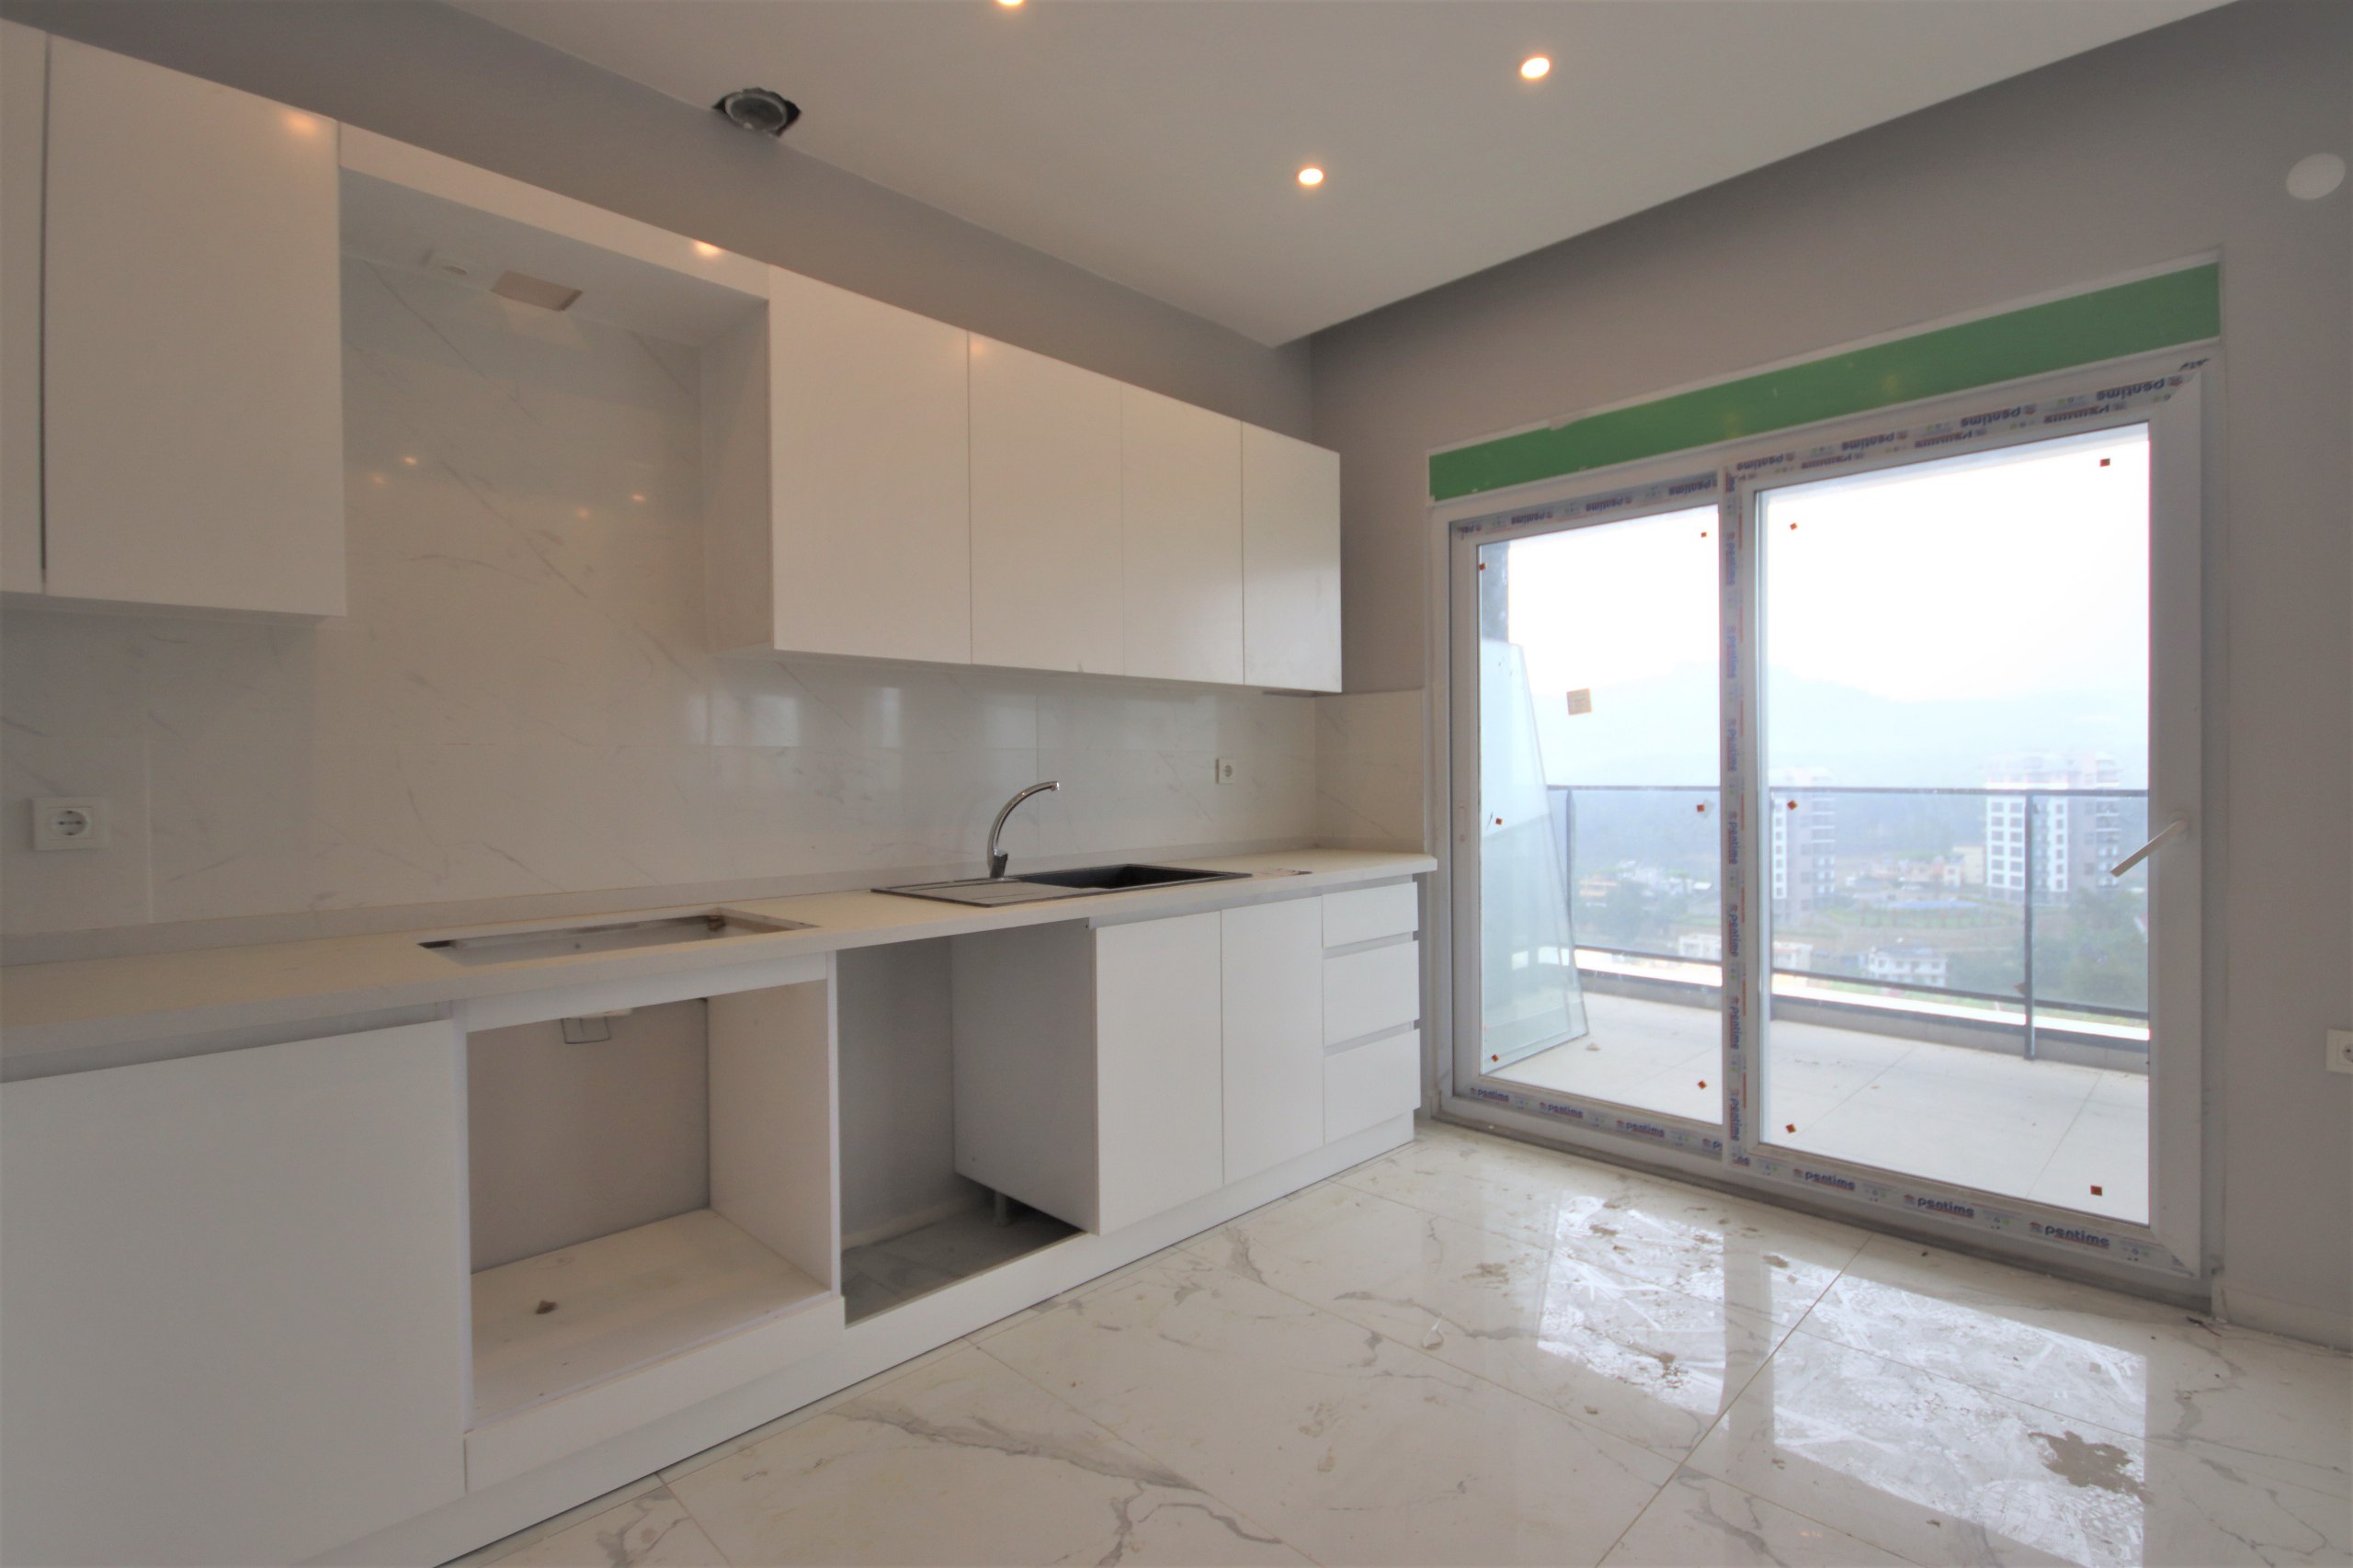 Купить квартиру в Турции у моря 2+1 (76,5 м2) на прозрачном пляже Авсаллара